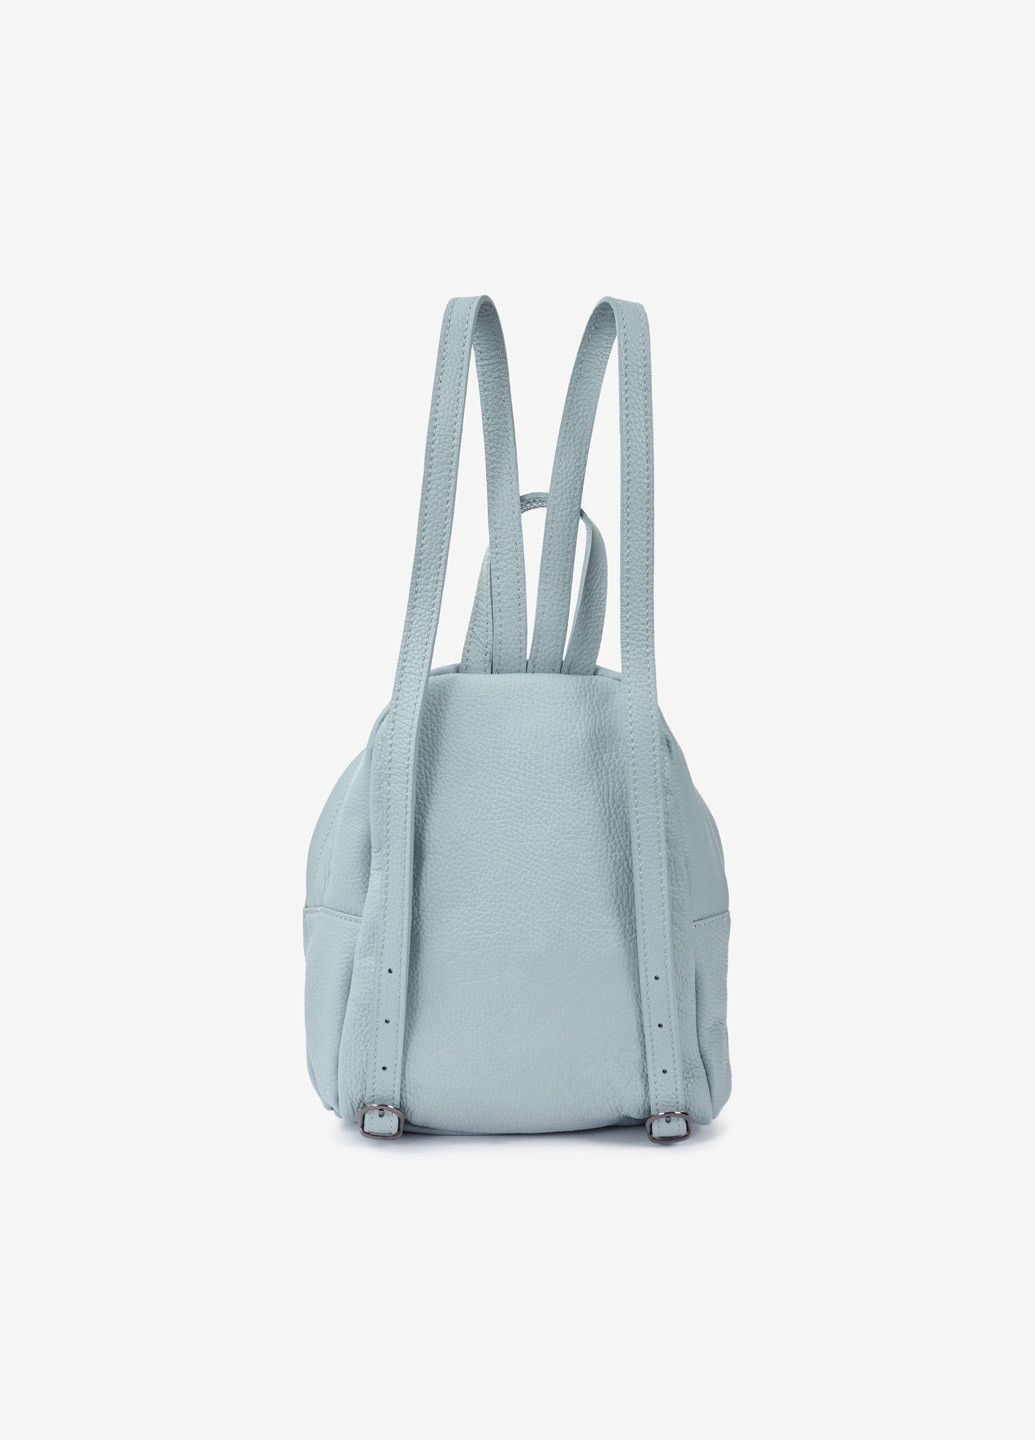 Рюкзак женский кожаный Backpack Regina Notte (253244650)